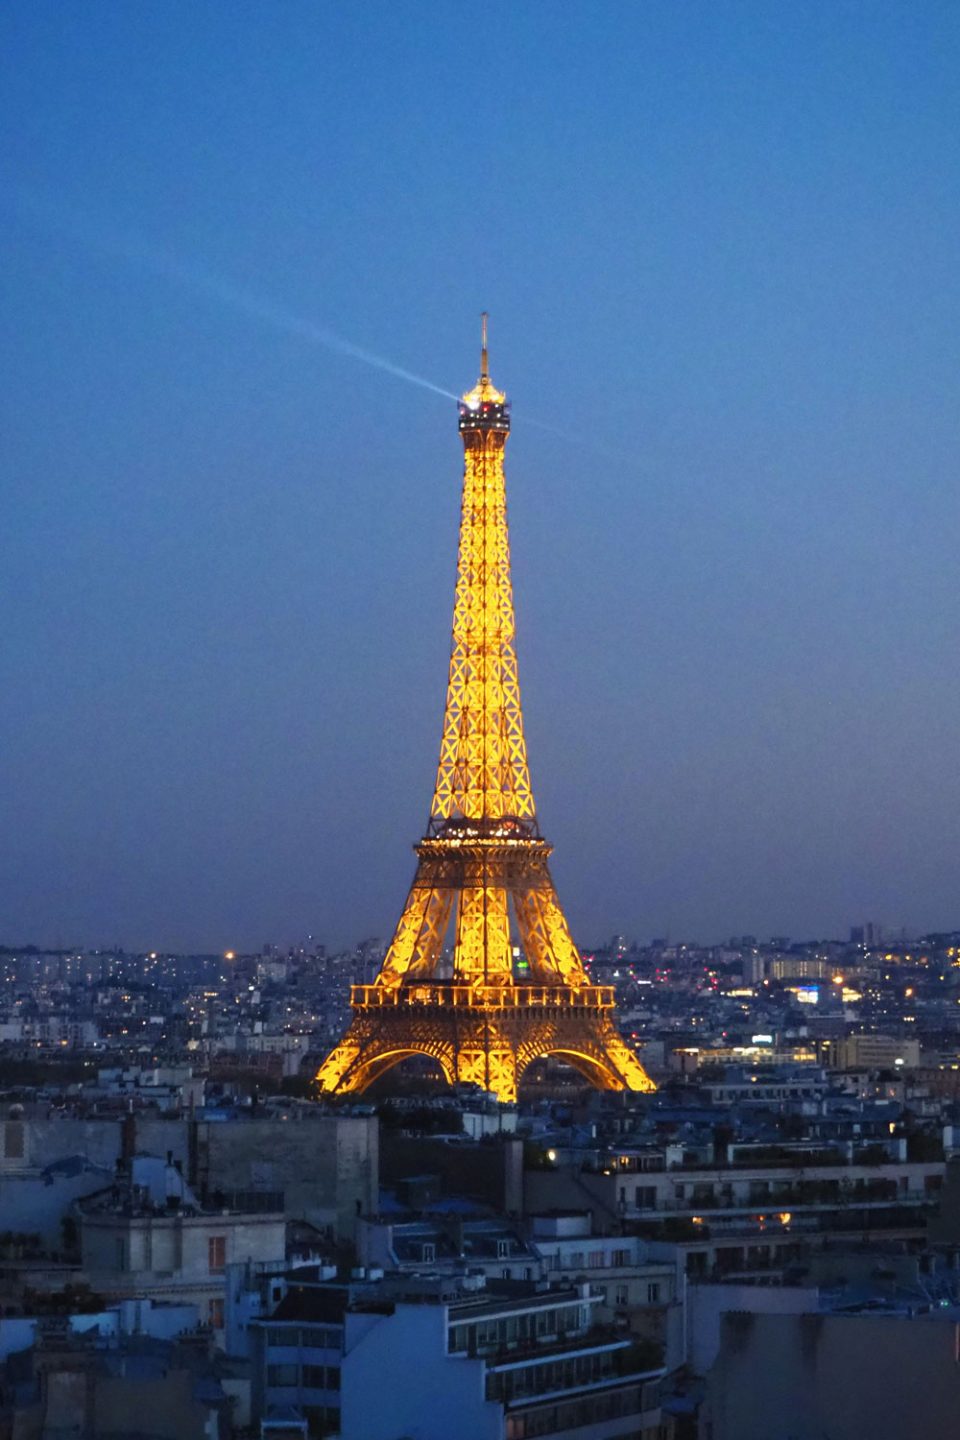 Eiffeltower in Paris by night